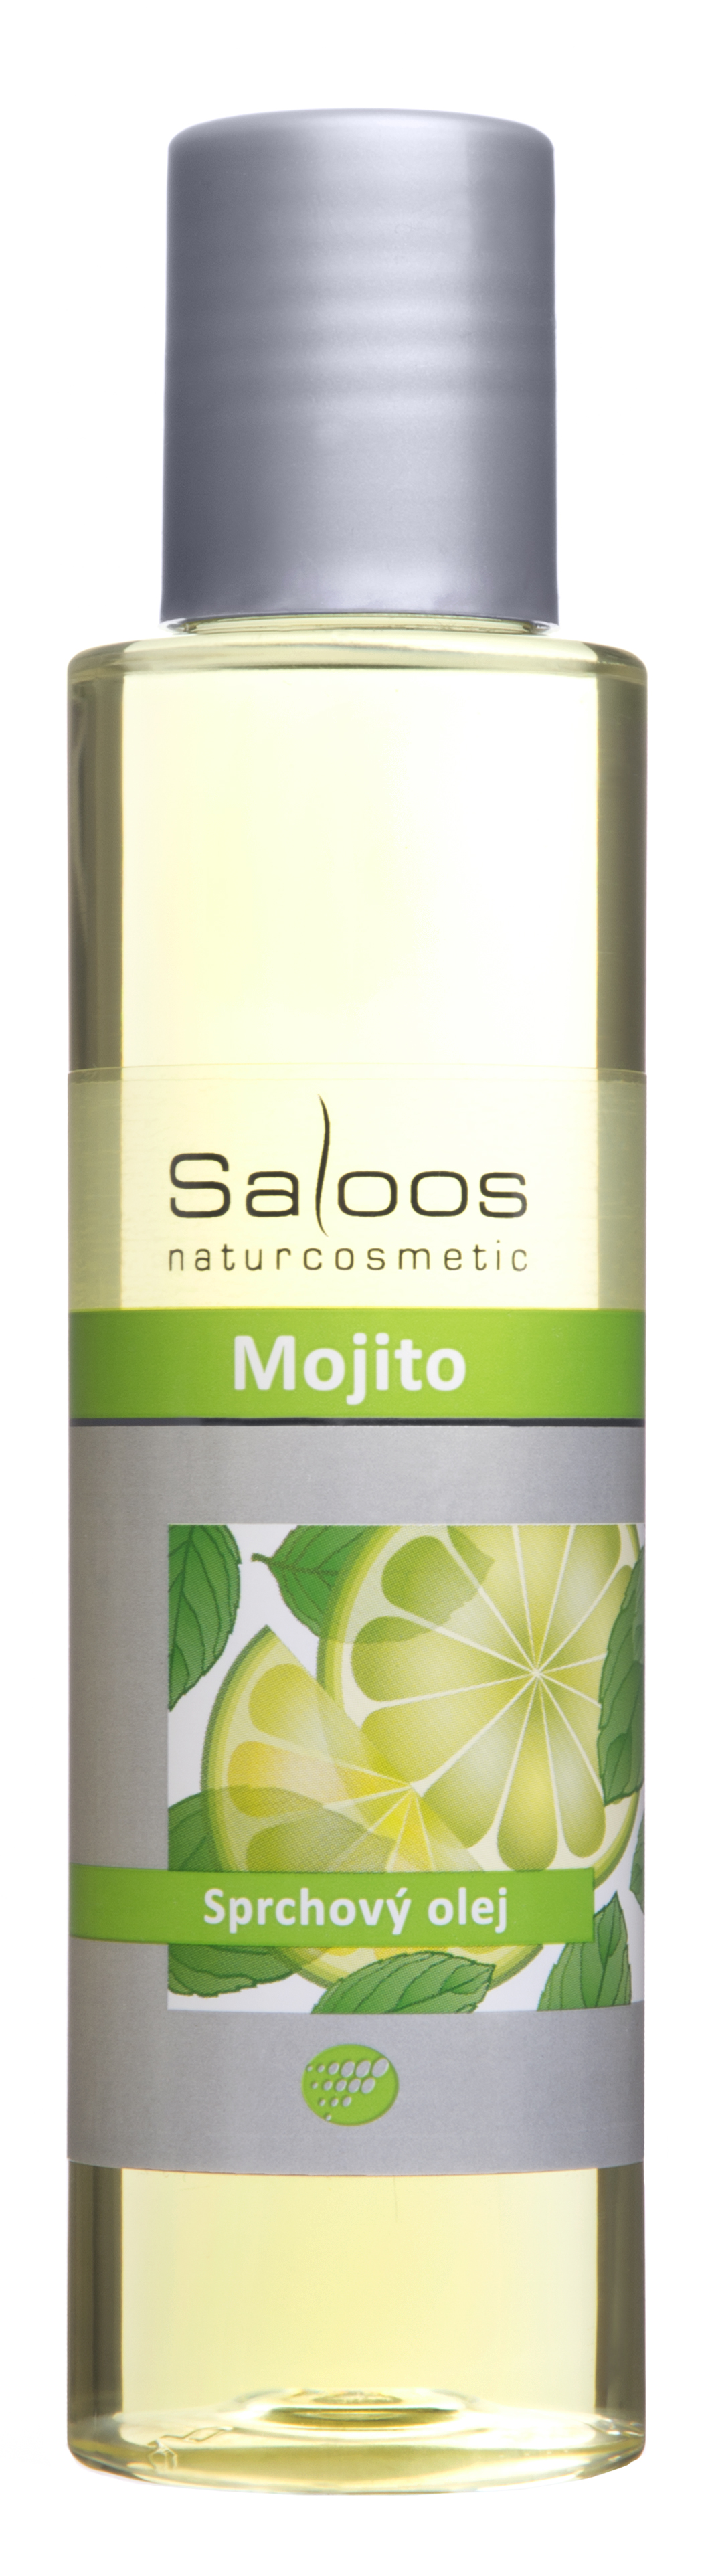 Sprchový olej Mochito - Saloos Objem: 125 ml